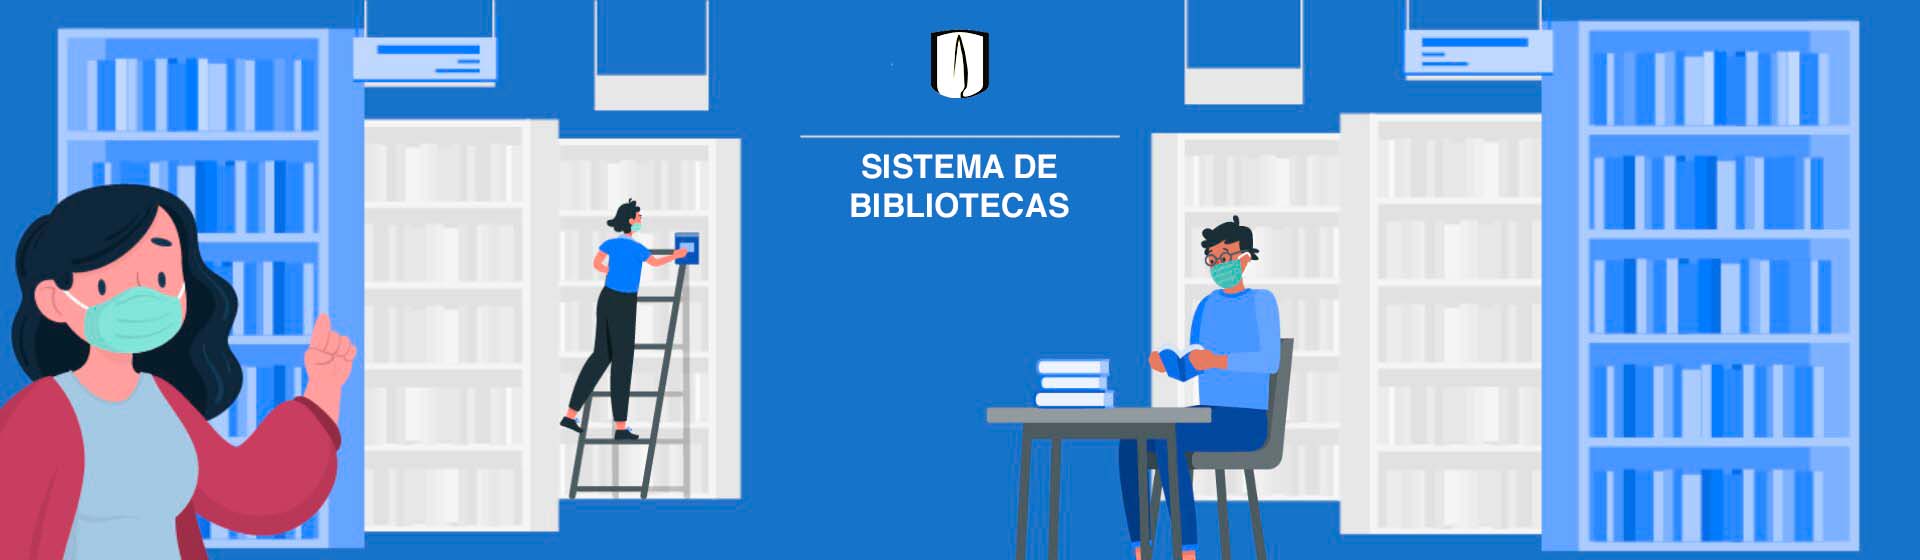 Sistema de Bibliotecas